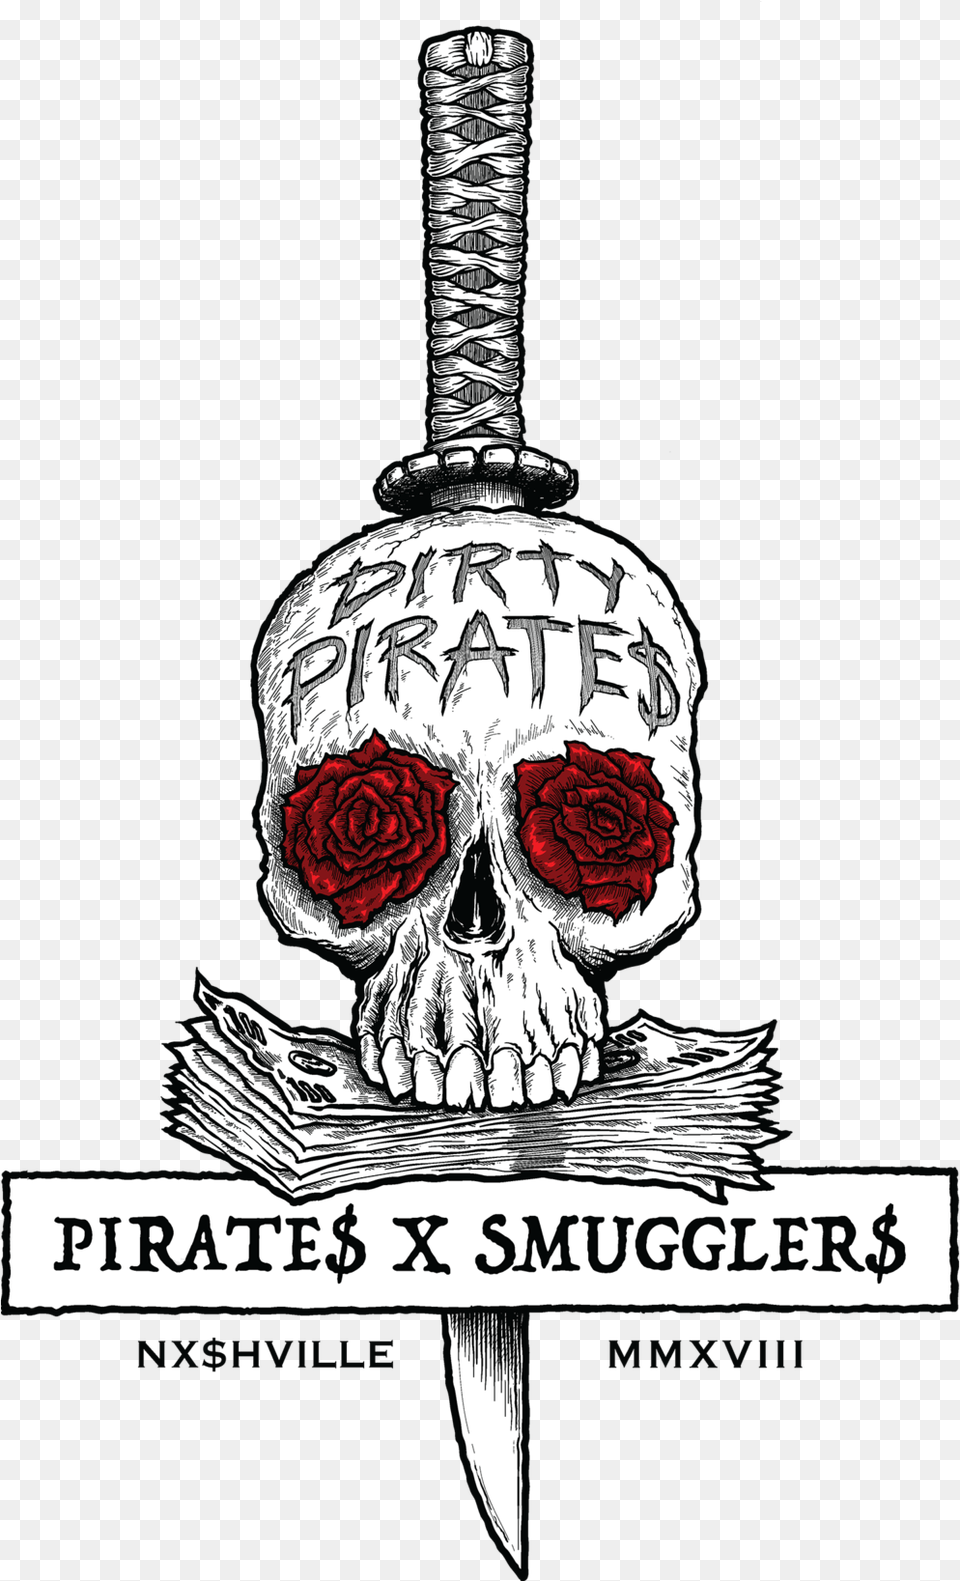 Pirates X Smugglers Logo Vector Illustration Smuggler Logo, Sword, Weapon, Flower, Plant Png Image